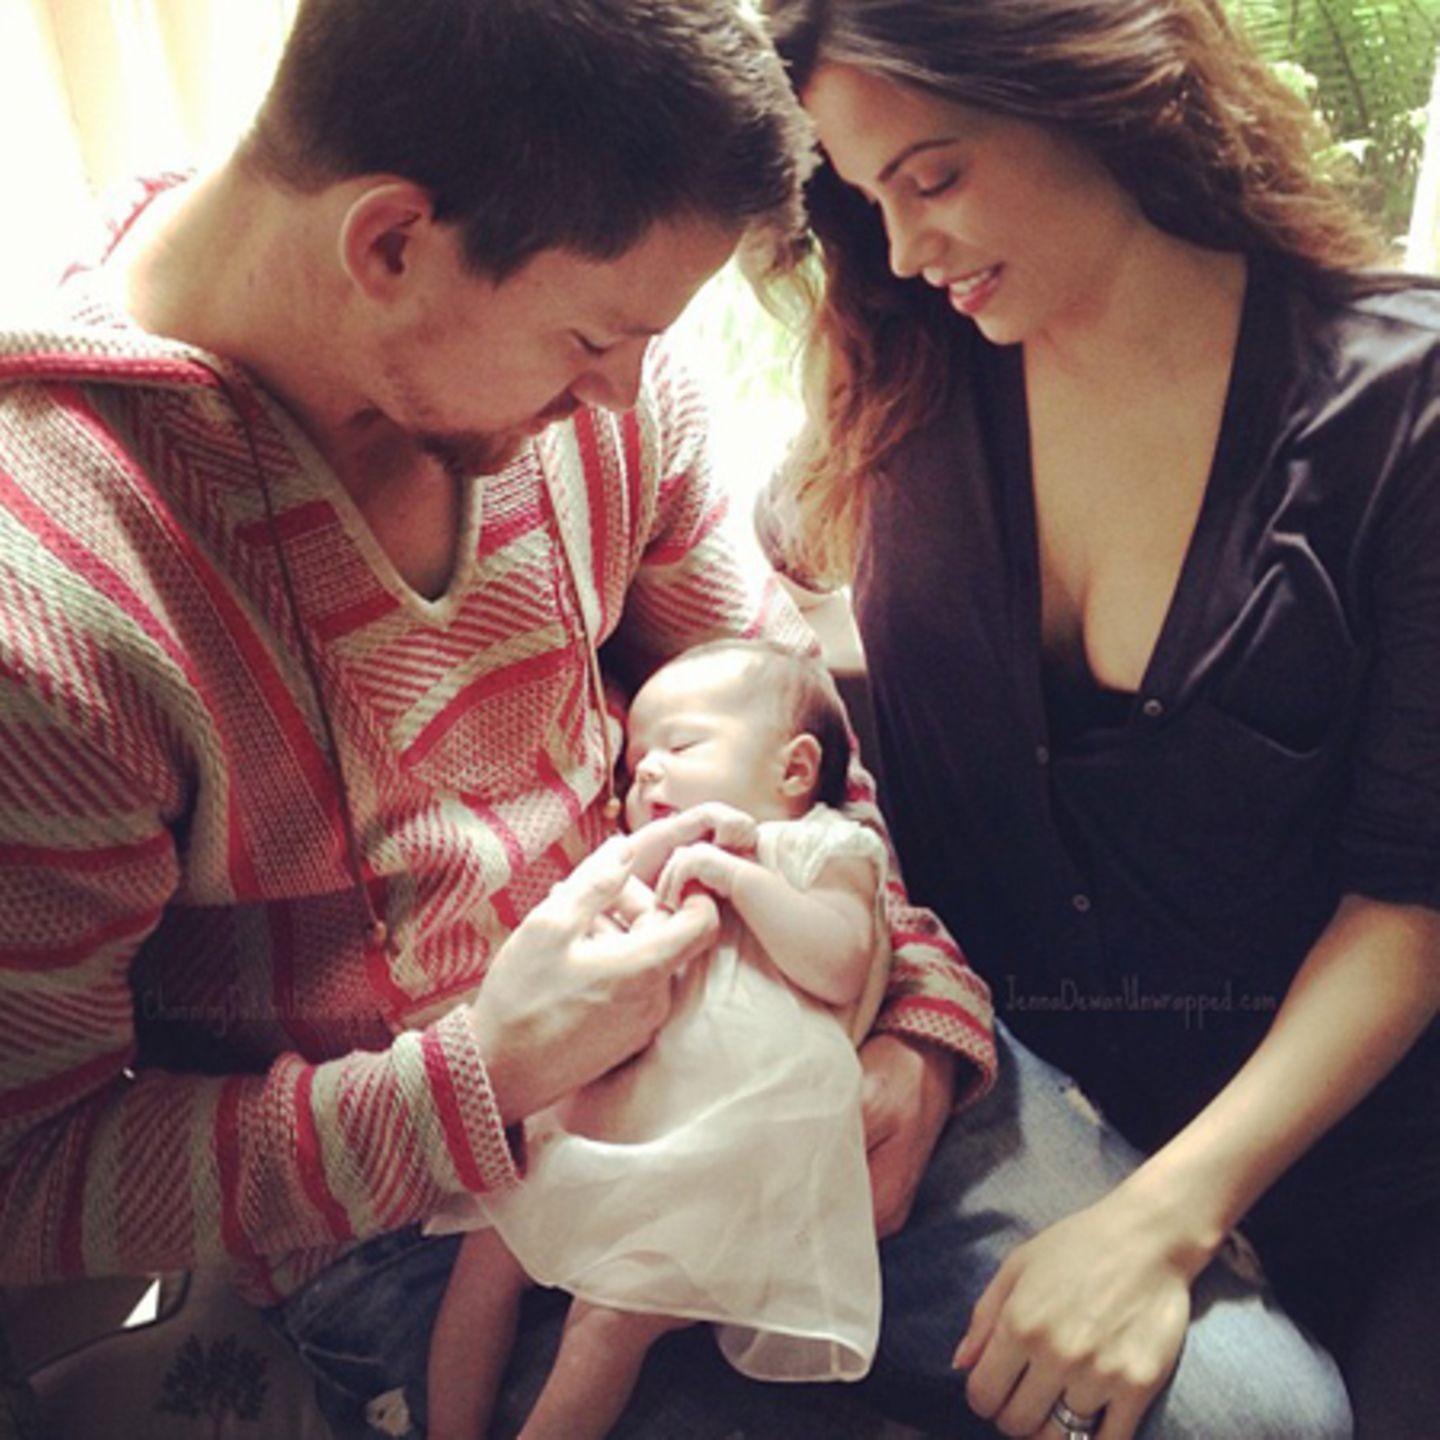 Os atores Channing Tatum e Jenna Dewan tiveram sua filha, Everly, em 2013 (Foto: Reprodução / Instagram)